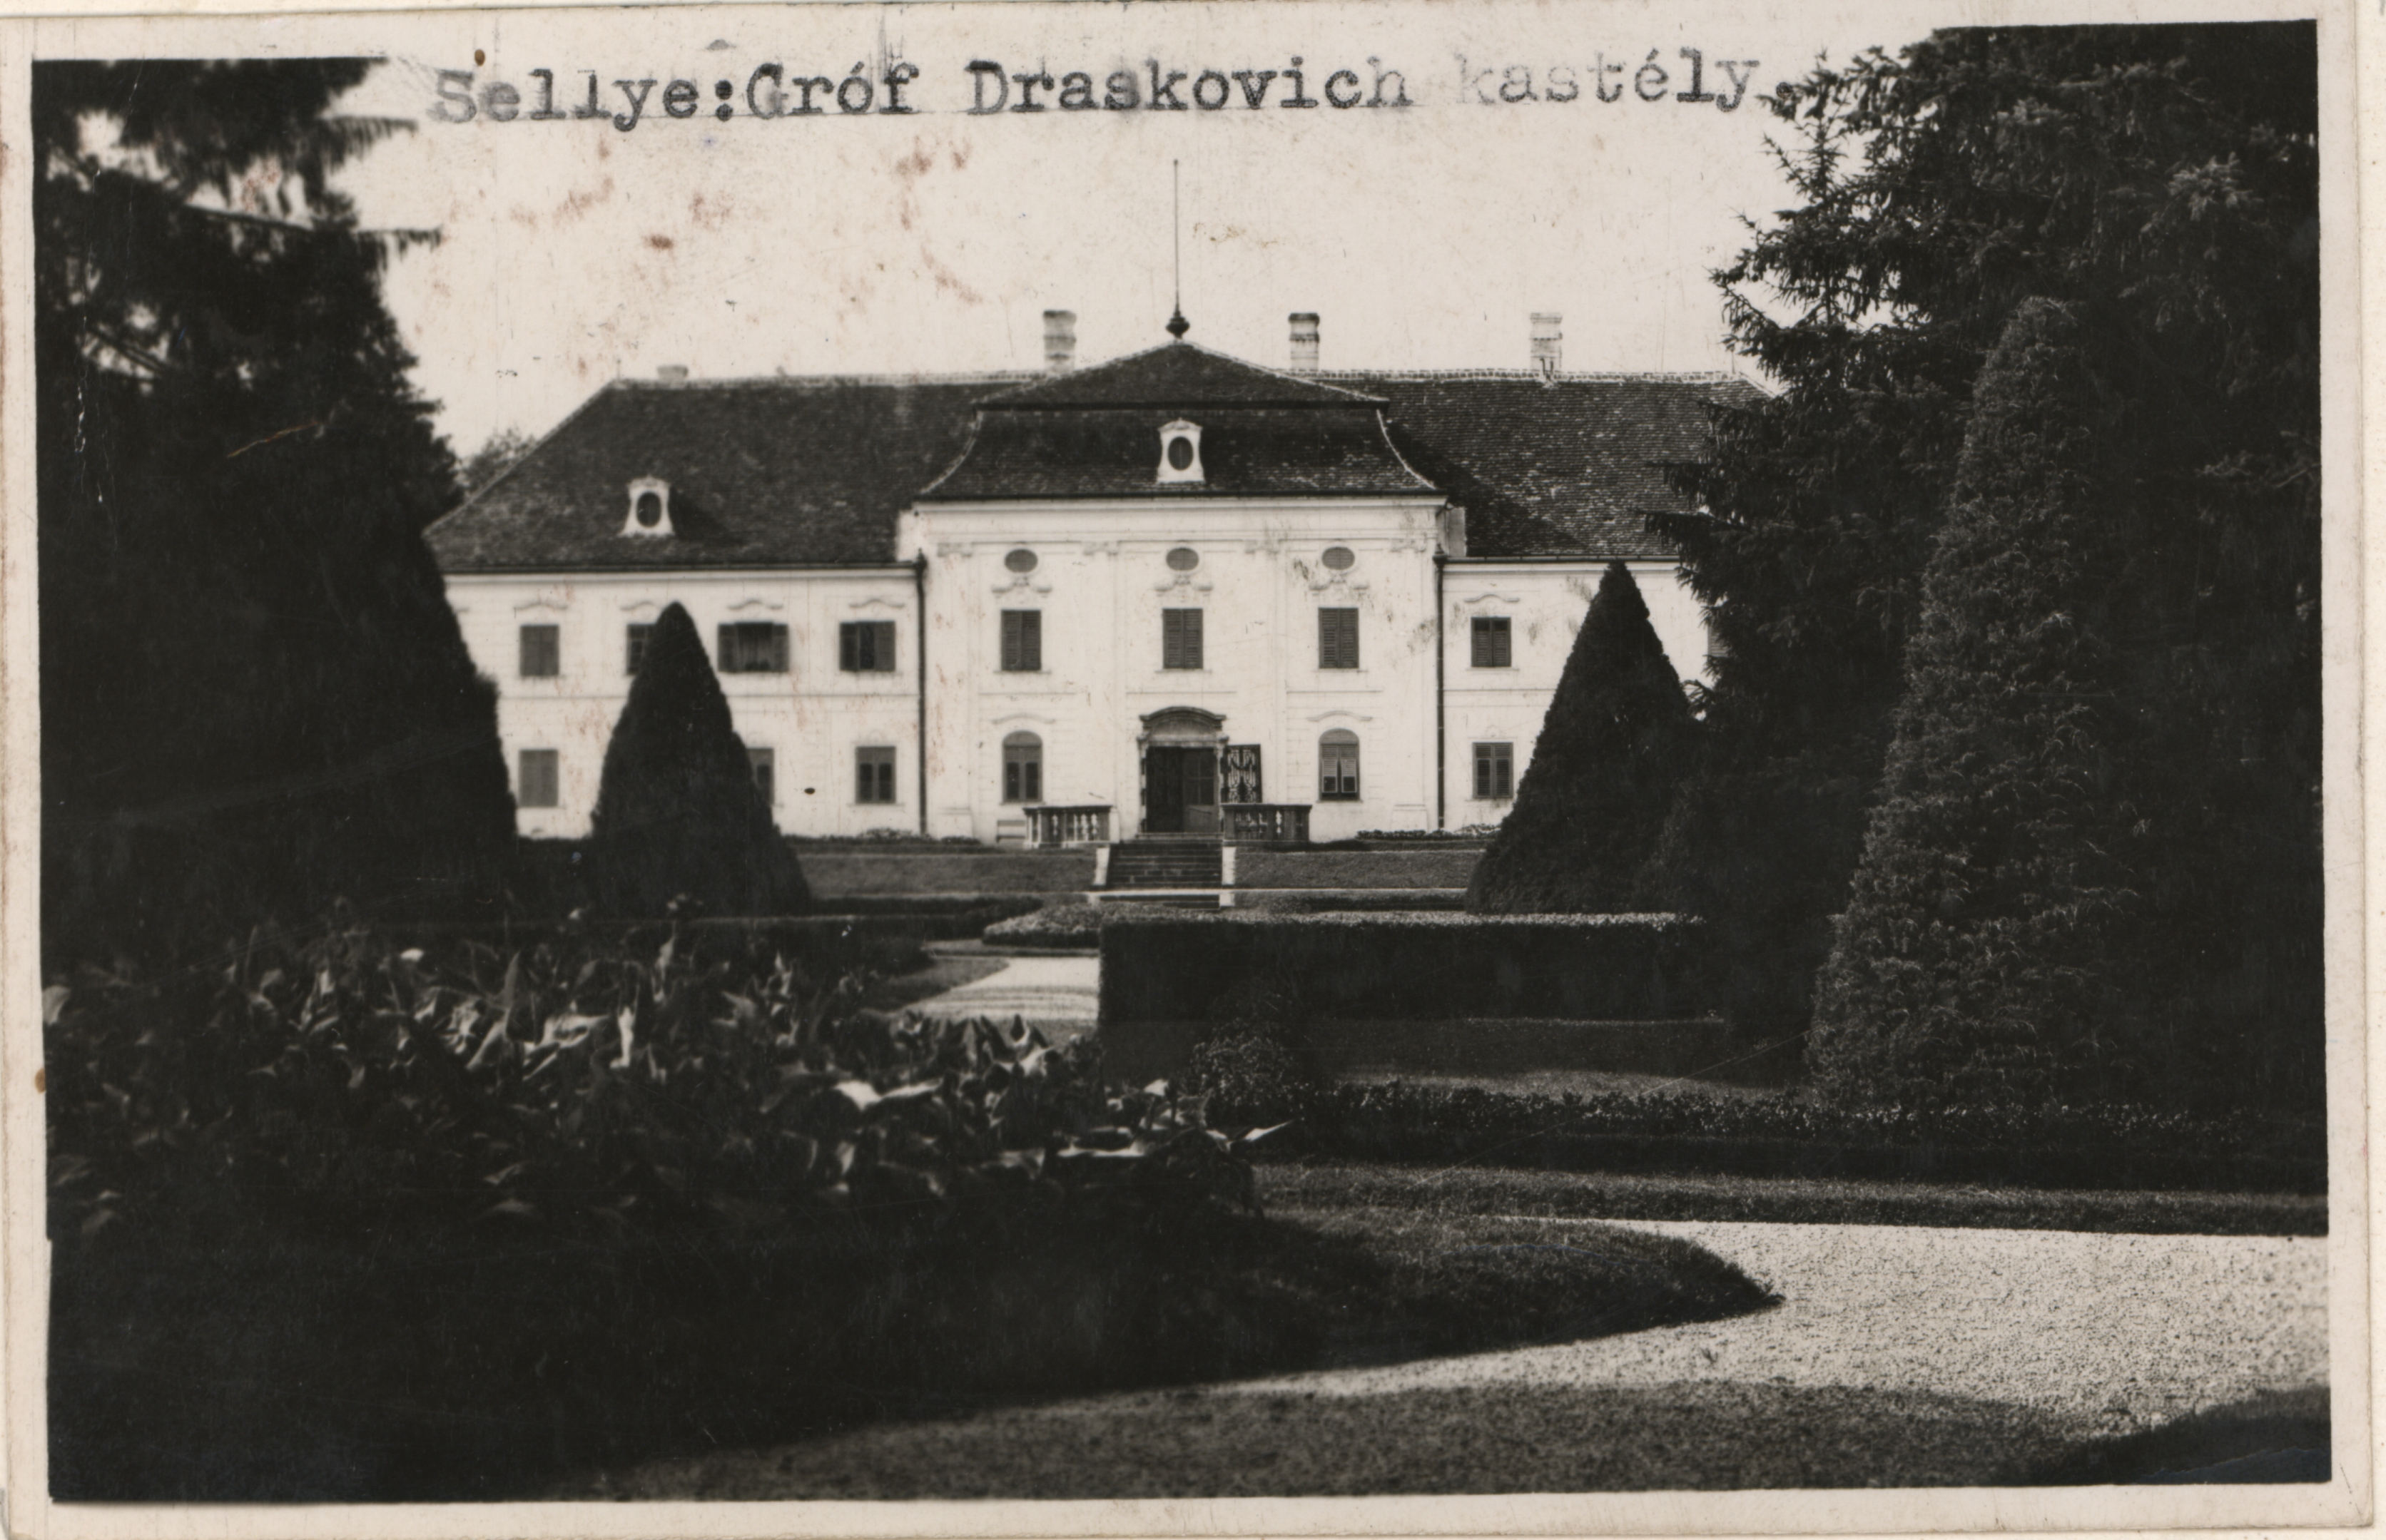 Sellye Draskovich kastély